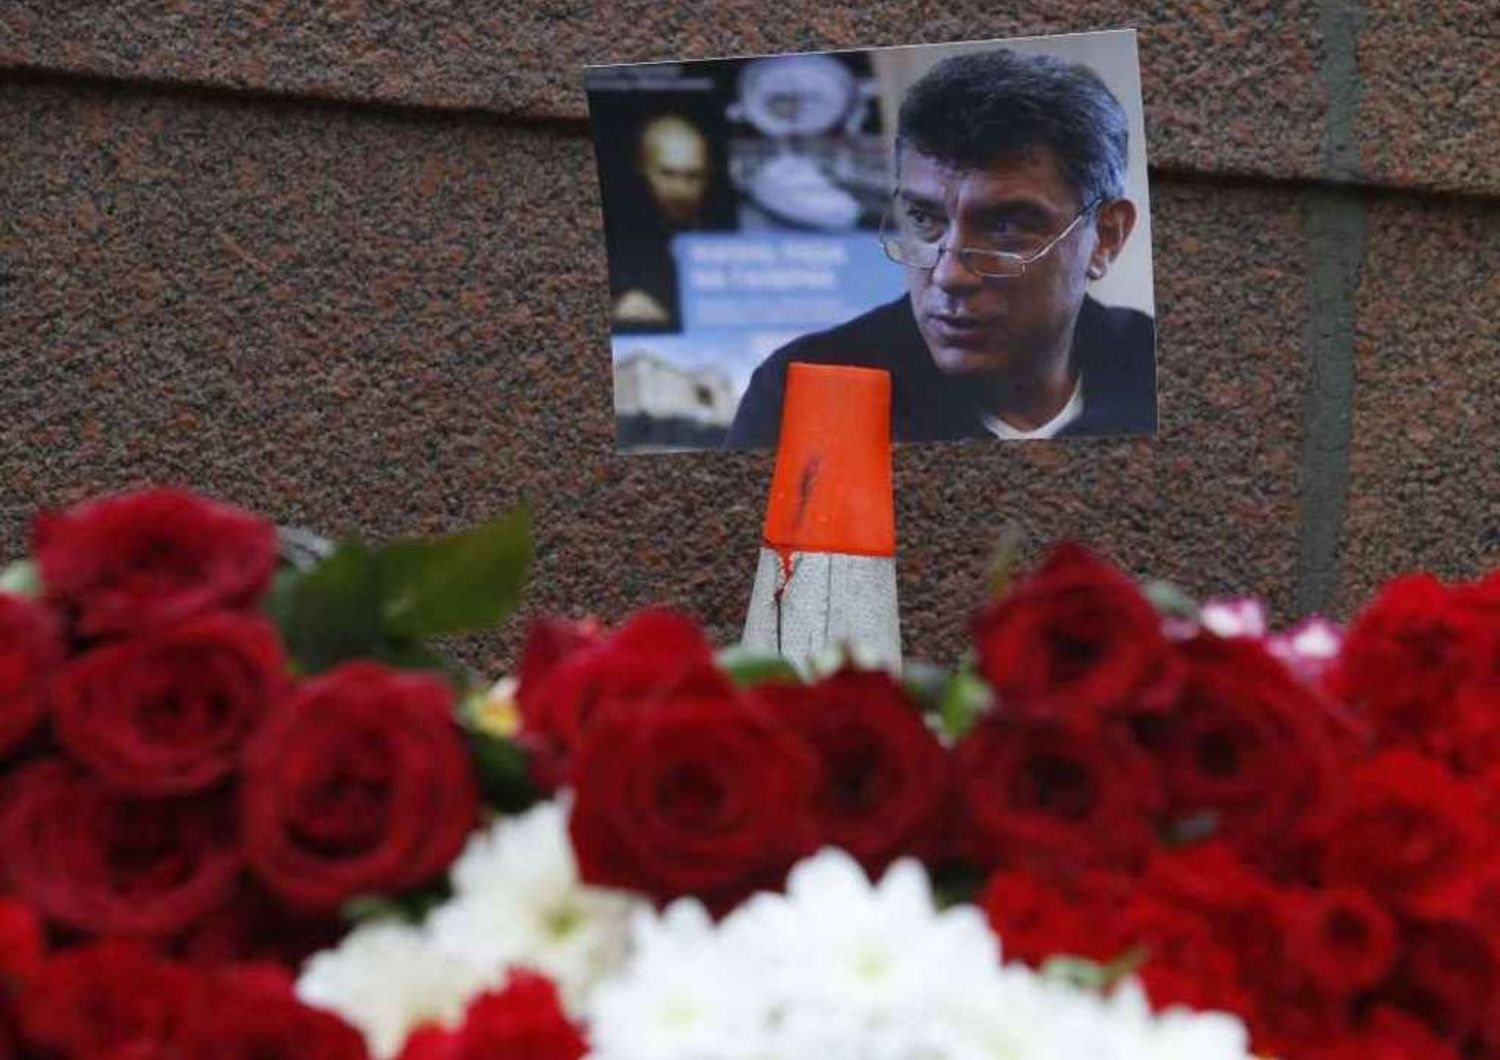 Omicidio Nemtsov: non si esclude pista islamista o ucraina